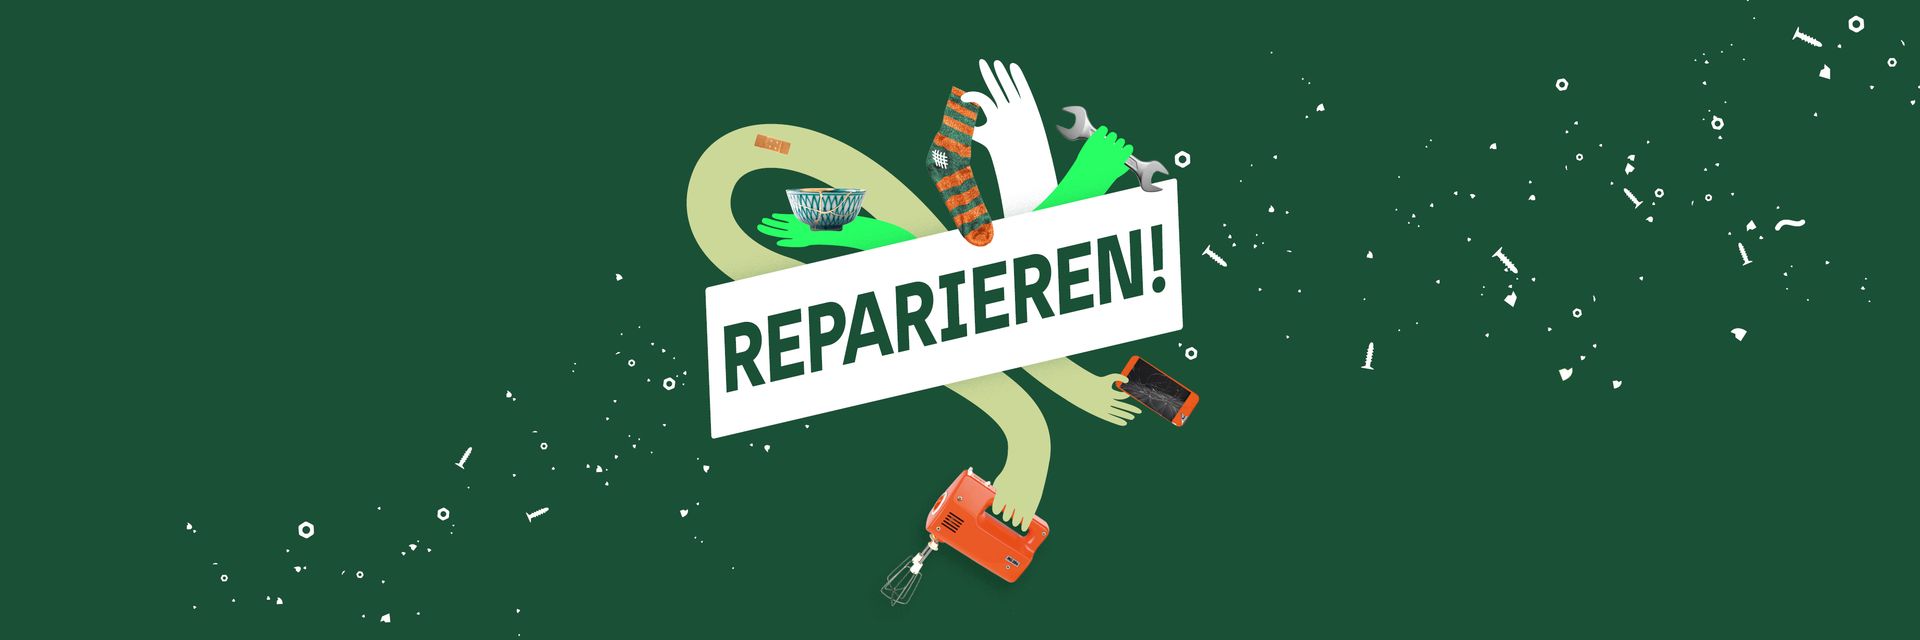 Schriftzug "Reparieren!", dahinter Hände, die diverse Objekte halten vor grünem Hintergrund.